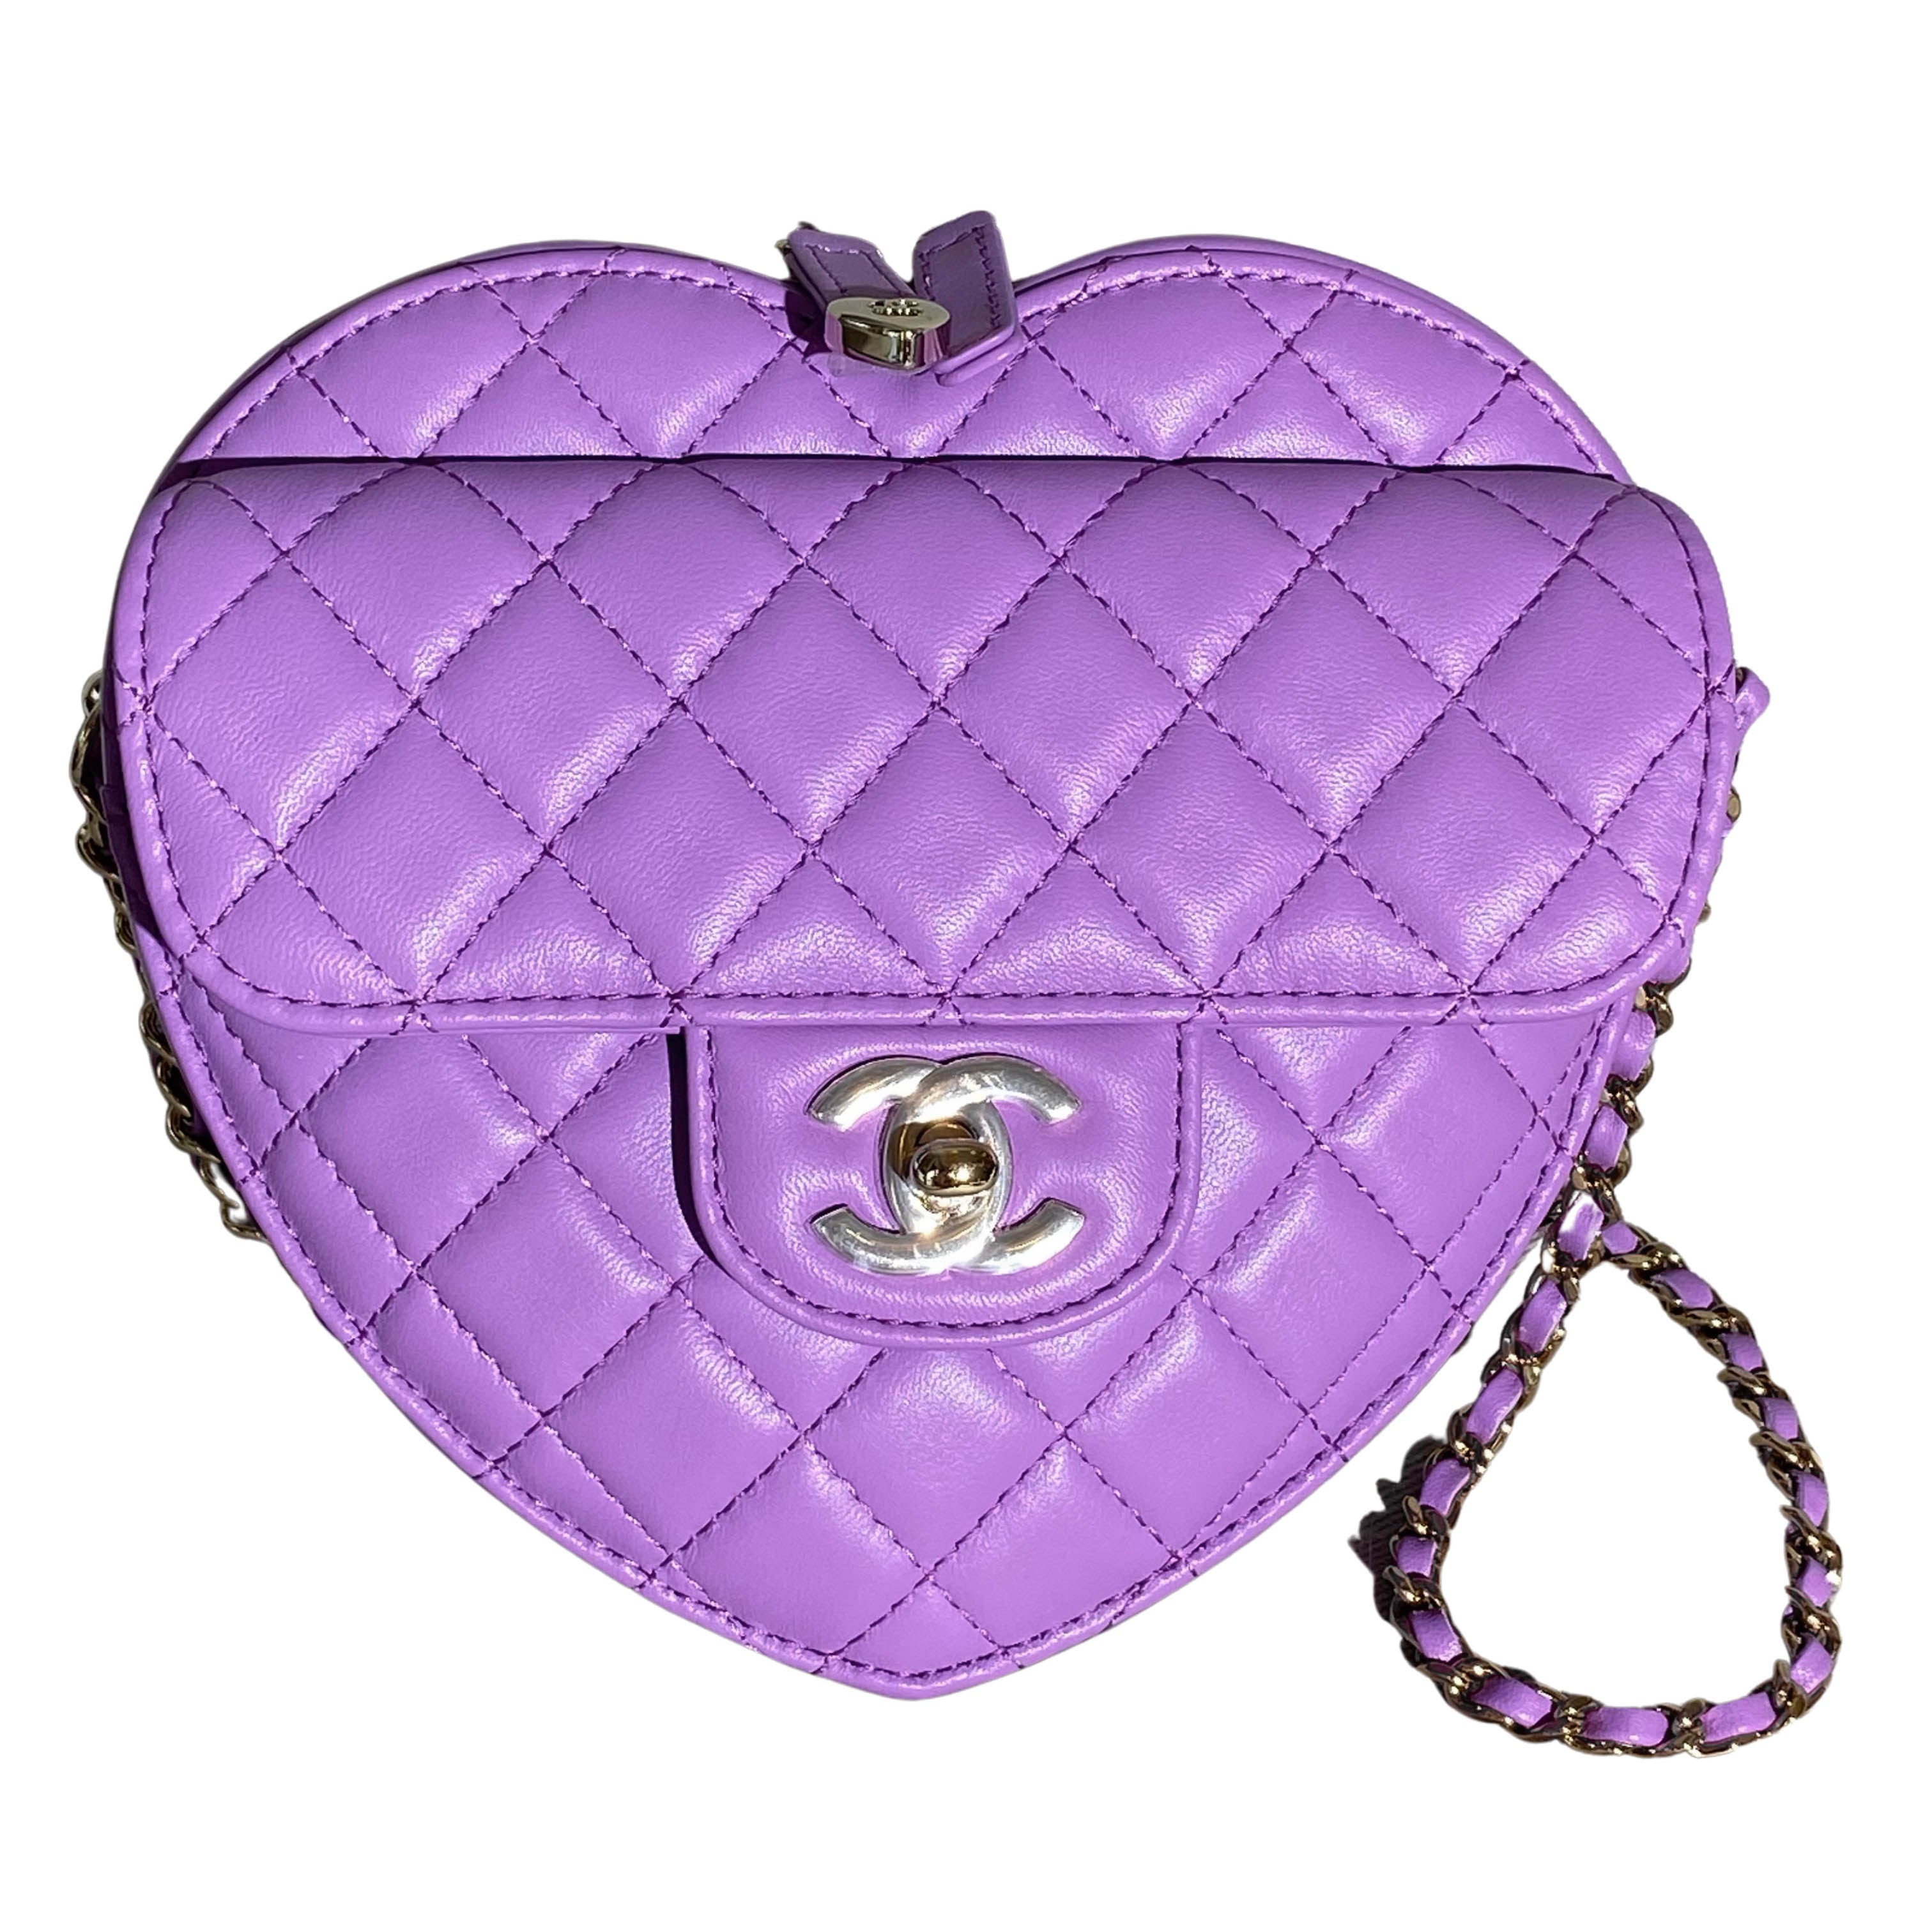 Chanel 22S Large Heart Bag in Purple Lambskin | Dearluxe